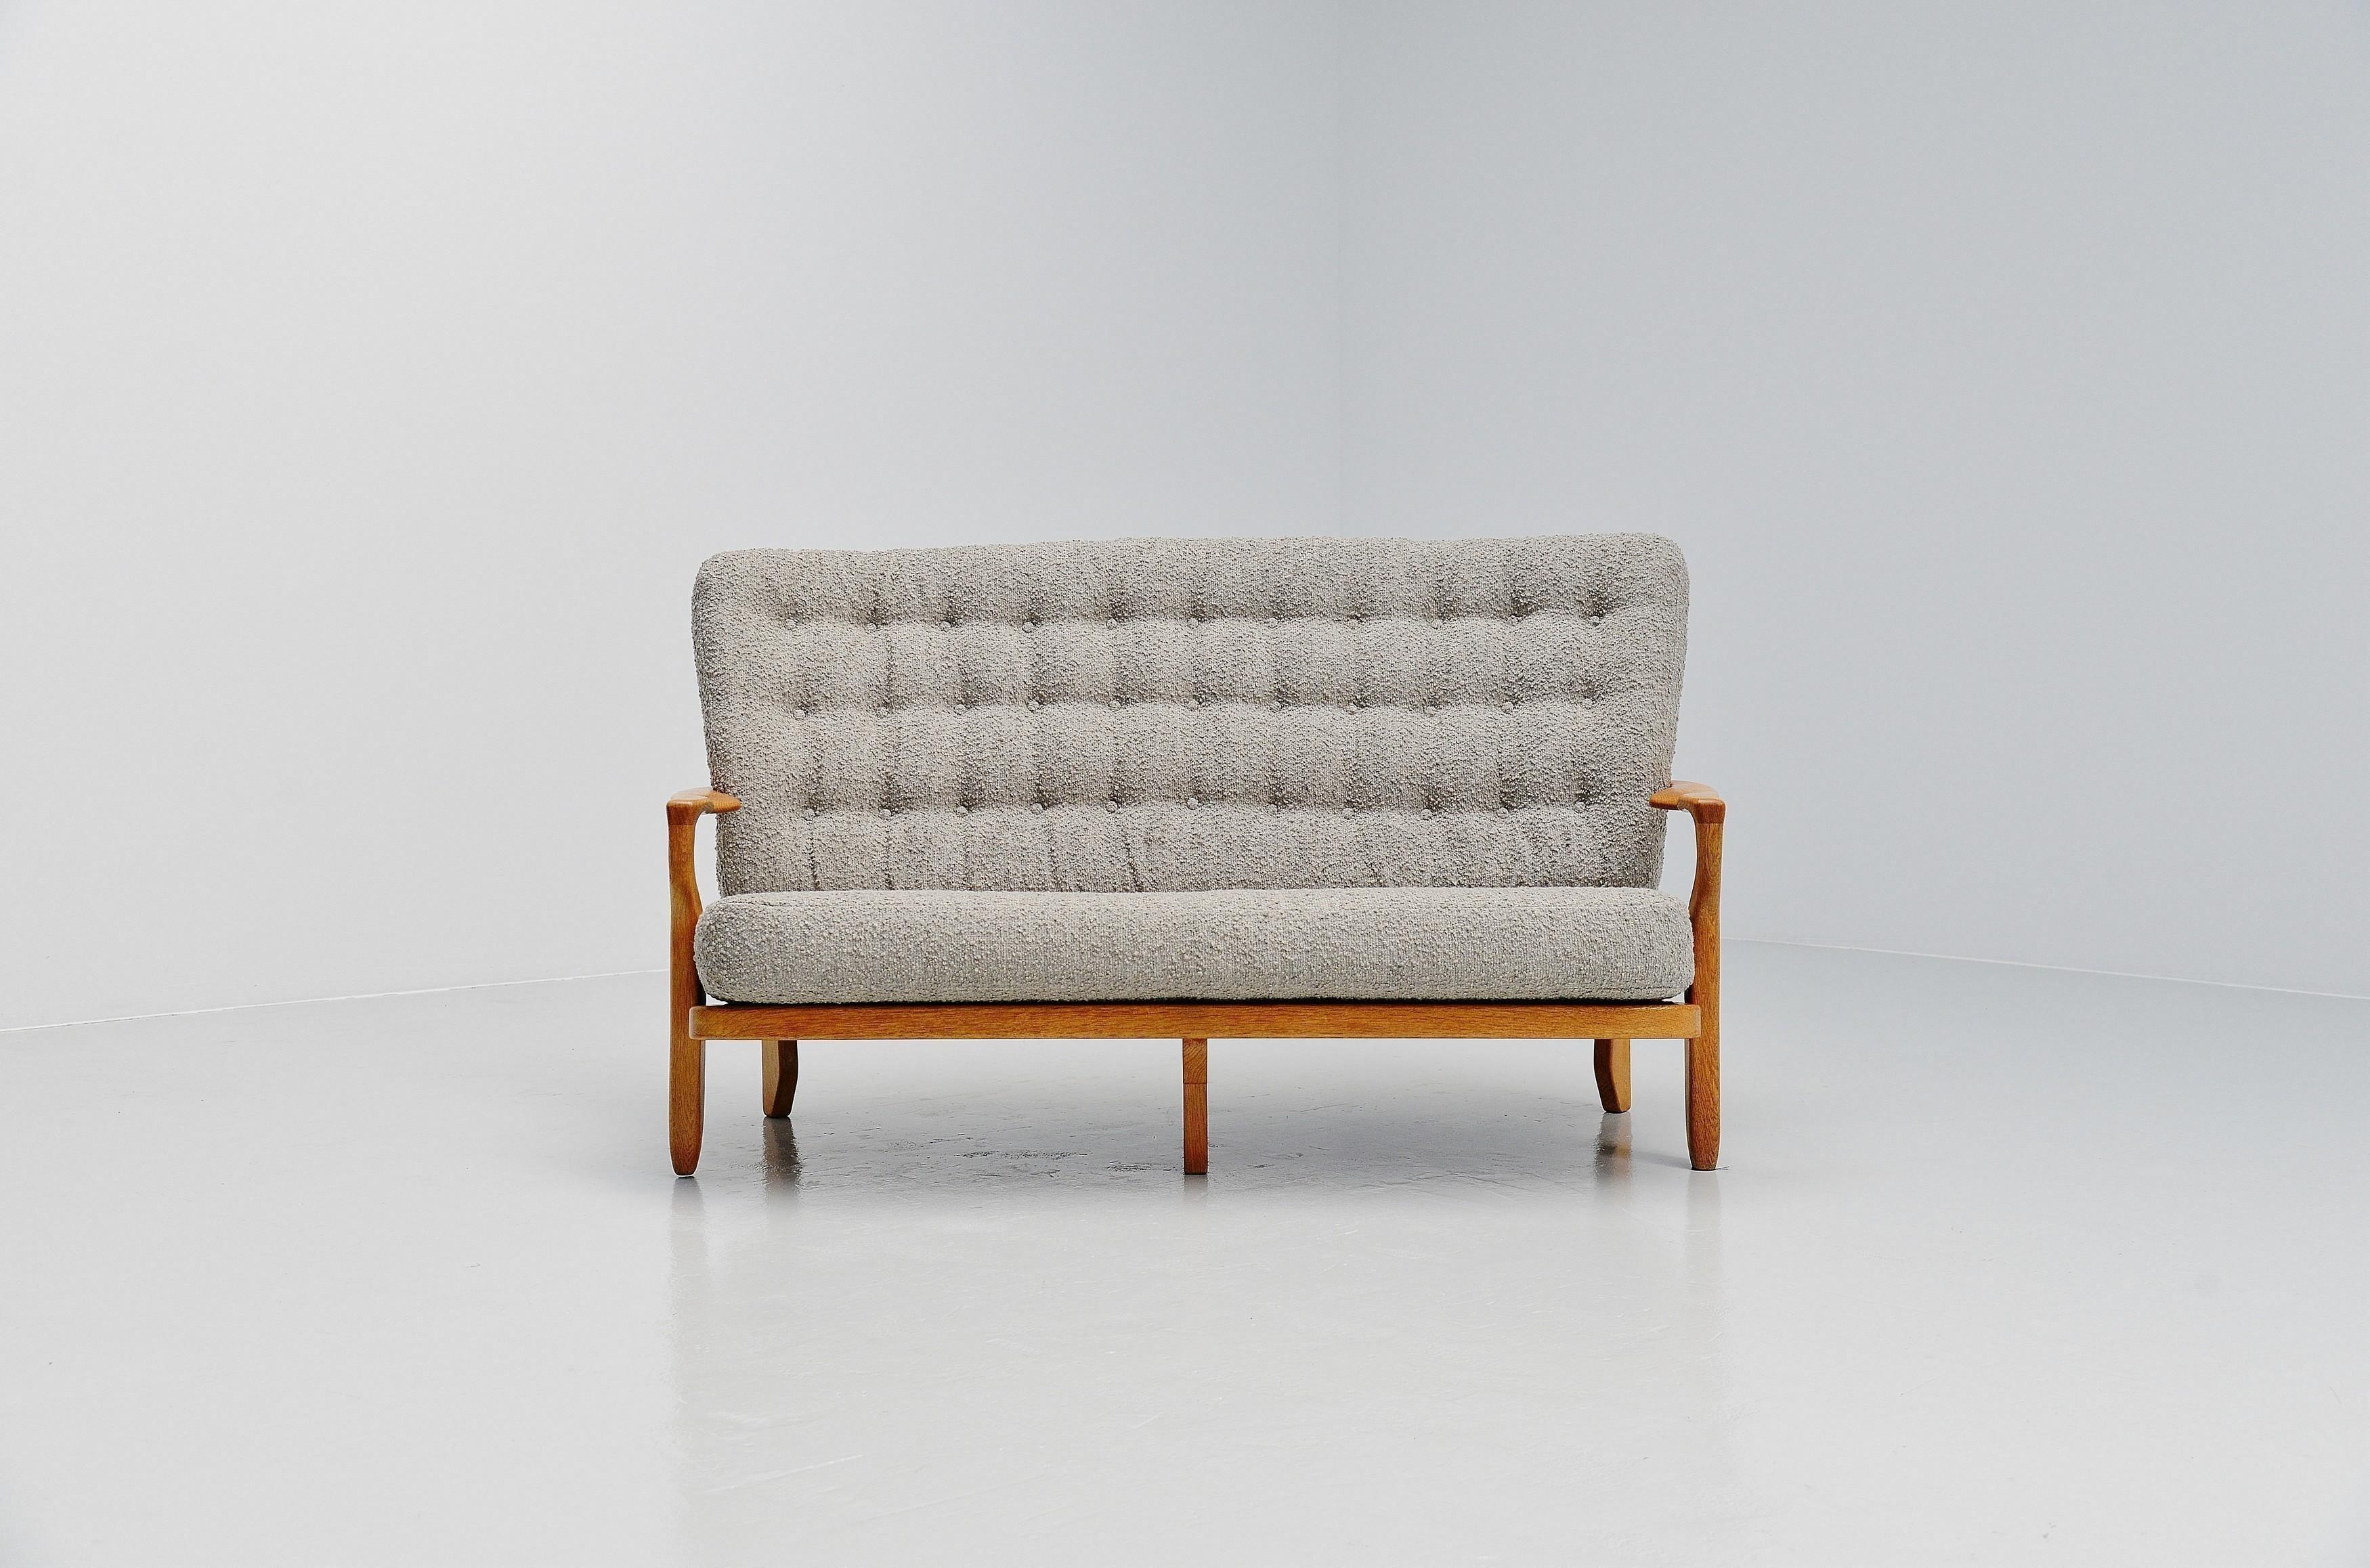 Ausgezeichnetes Paar 'Juliette'-Sofas, entworfen von Robert Guillerme und Jacques Chambron, Frankreich 1955. Diese Sofas haben eine sehr schöne offene Struktur aus massiver Eiche mit geschnitzten Stacheln, wofür dieses Designer-Duo bekannt war. Sie